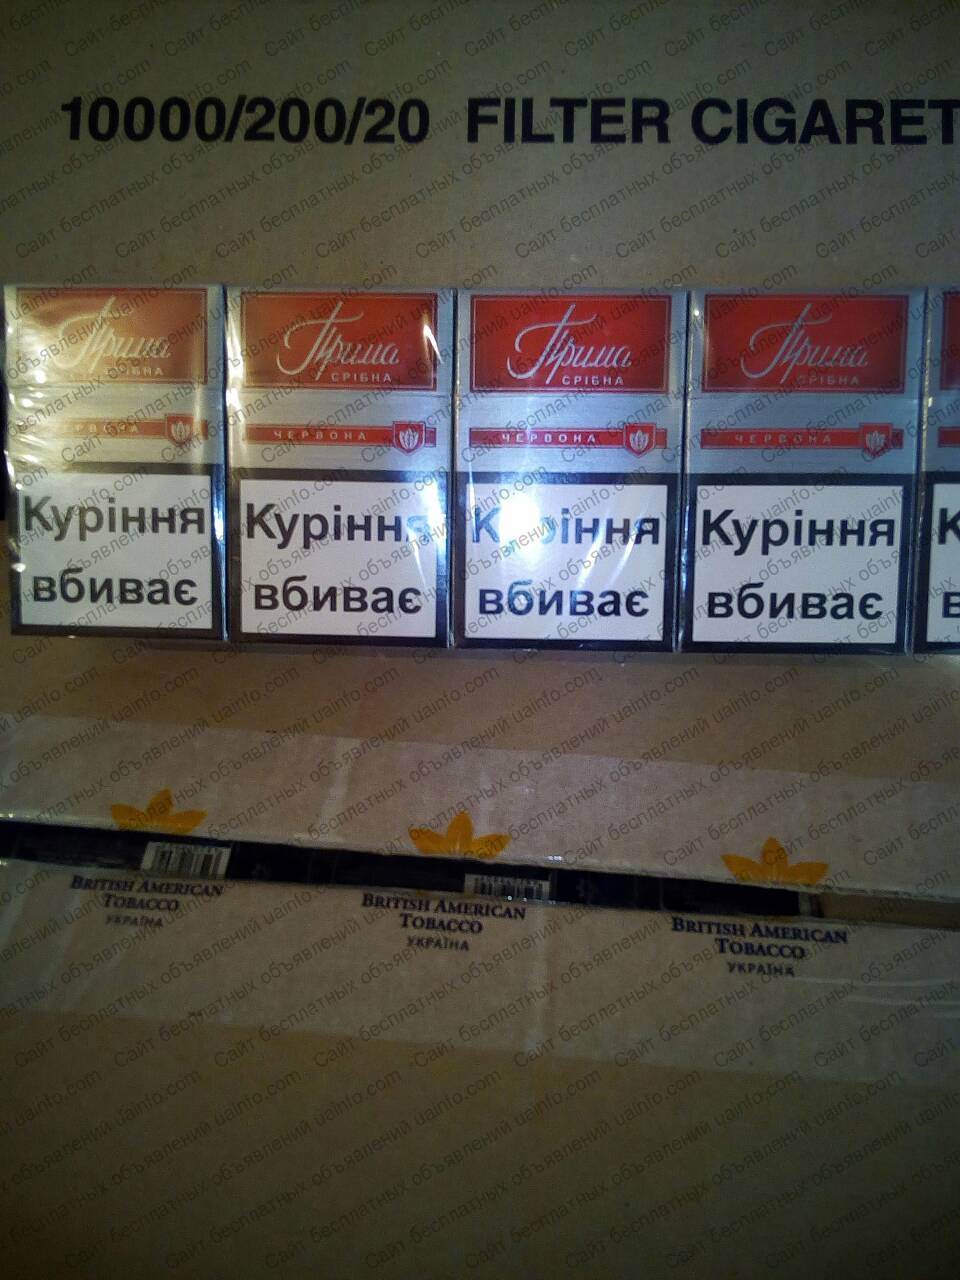 Фото: Сигареты прима срибна красная, мрц 25,24. оптом. без предоплаты